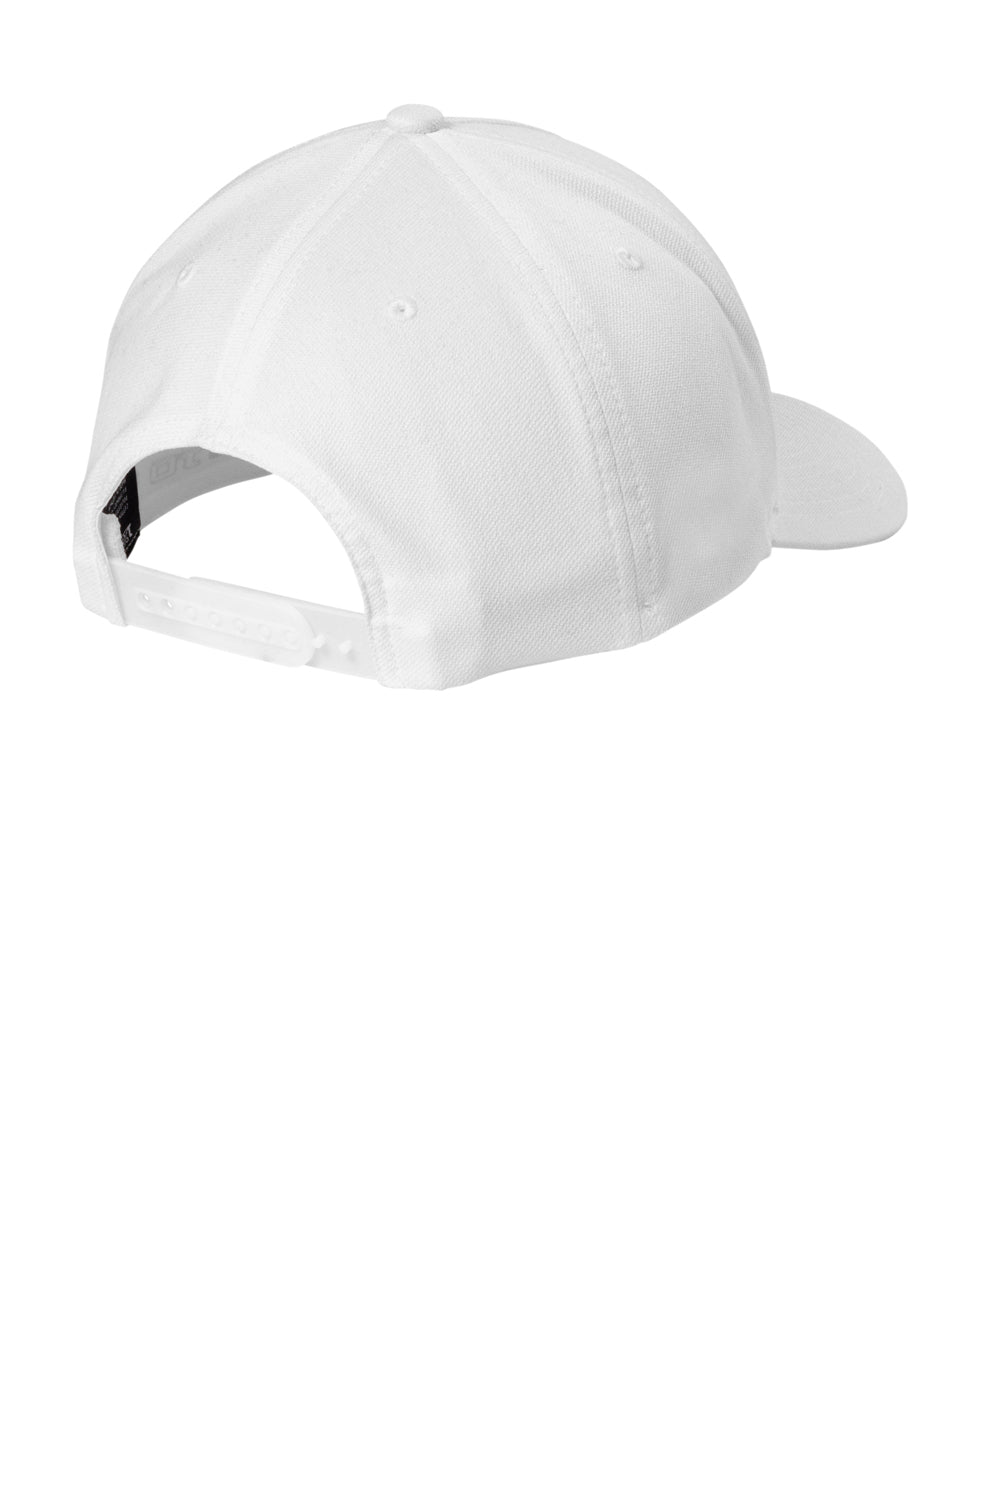 TravisMathew TM1MU425  FOMO Adjustable Hat White Flat Back